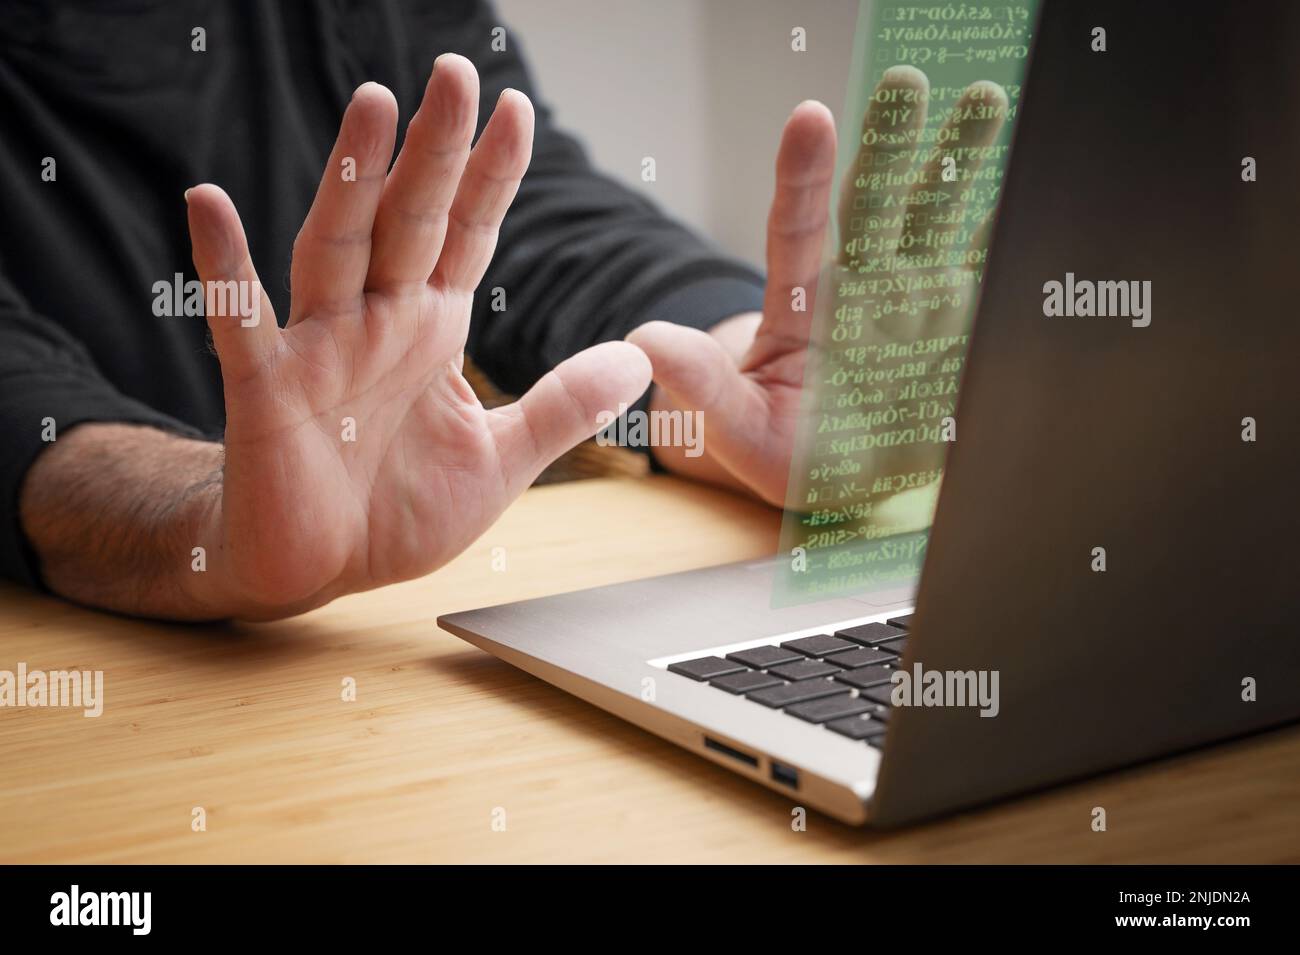 Die Hände werden vom Laptop aus mit Stoppgesten zurückgeworfen, während unbekannter Code auf dem Bildschirm erscheint, das Konzept von Cyberkriminalität wie Hackerangriffen, Ransomware und Stockfoto